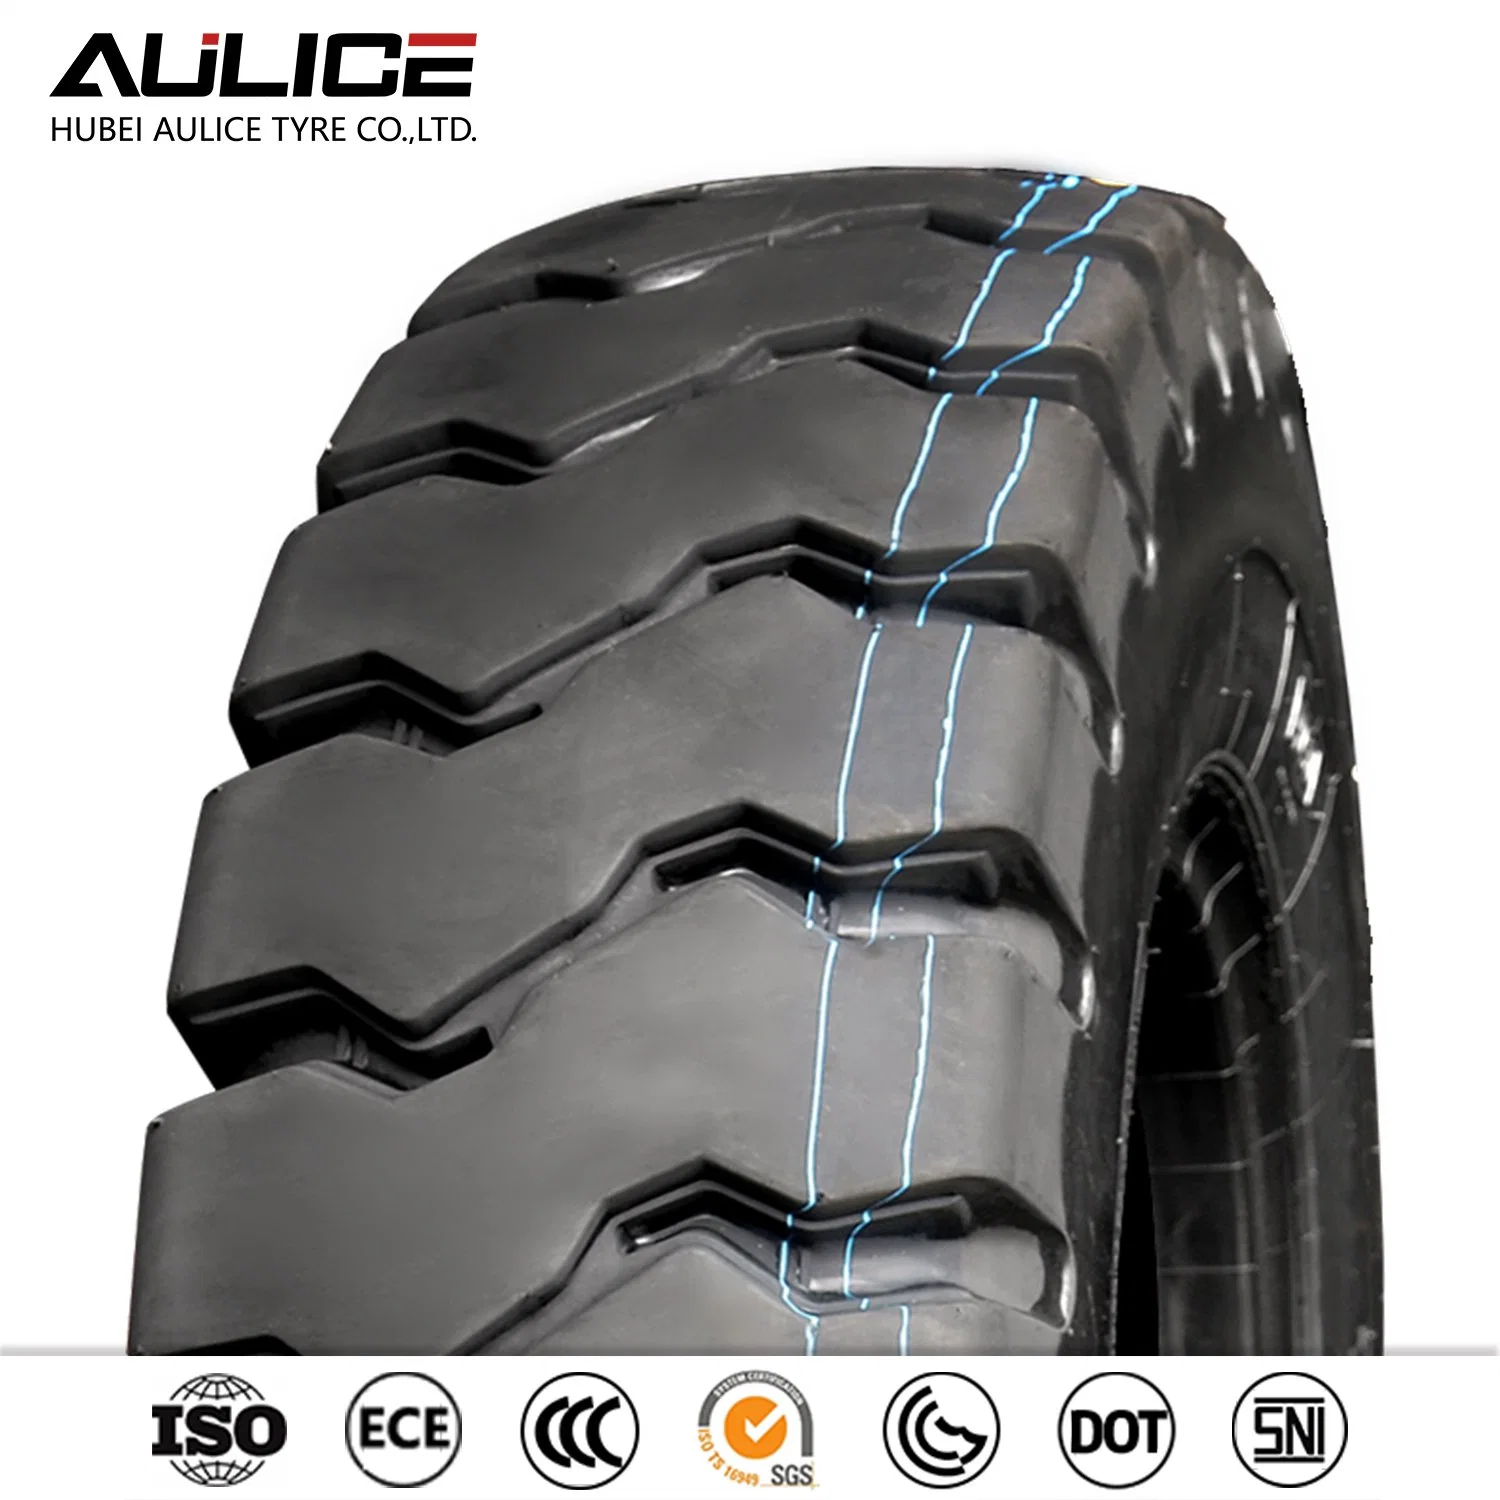 Шины с диагональным кордом марки Aulice L-5 23.5-25 OTR шины внедорожные Шины Строительные шины Горные шины Продать